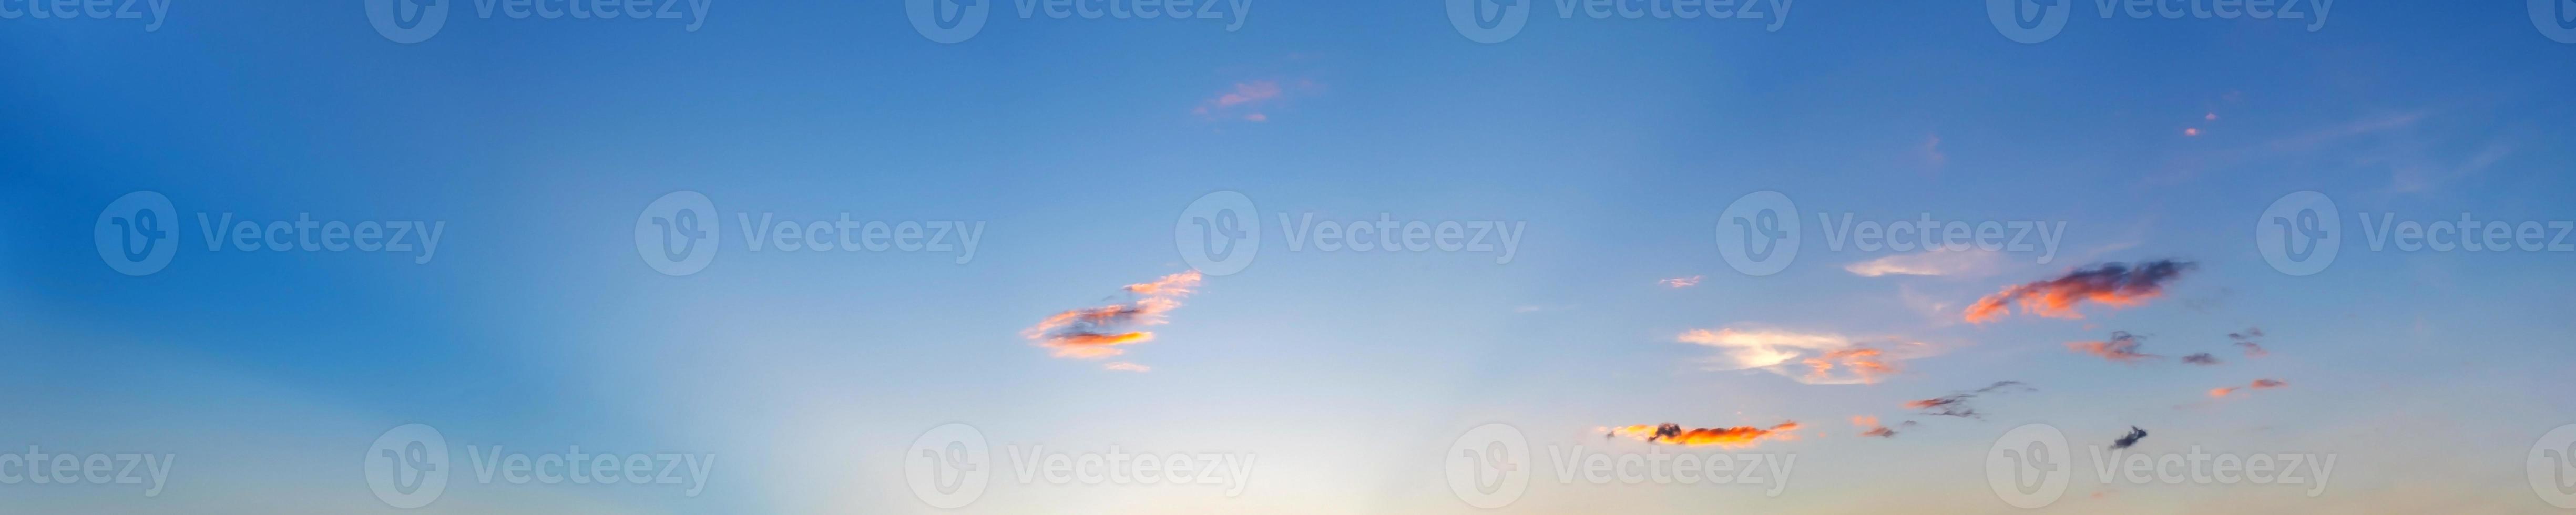 espectacular cielo panorámico con nubes en la hora del amanecer y el atardecer. imagen panorámica. foto